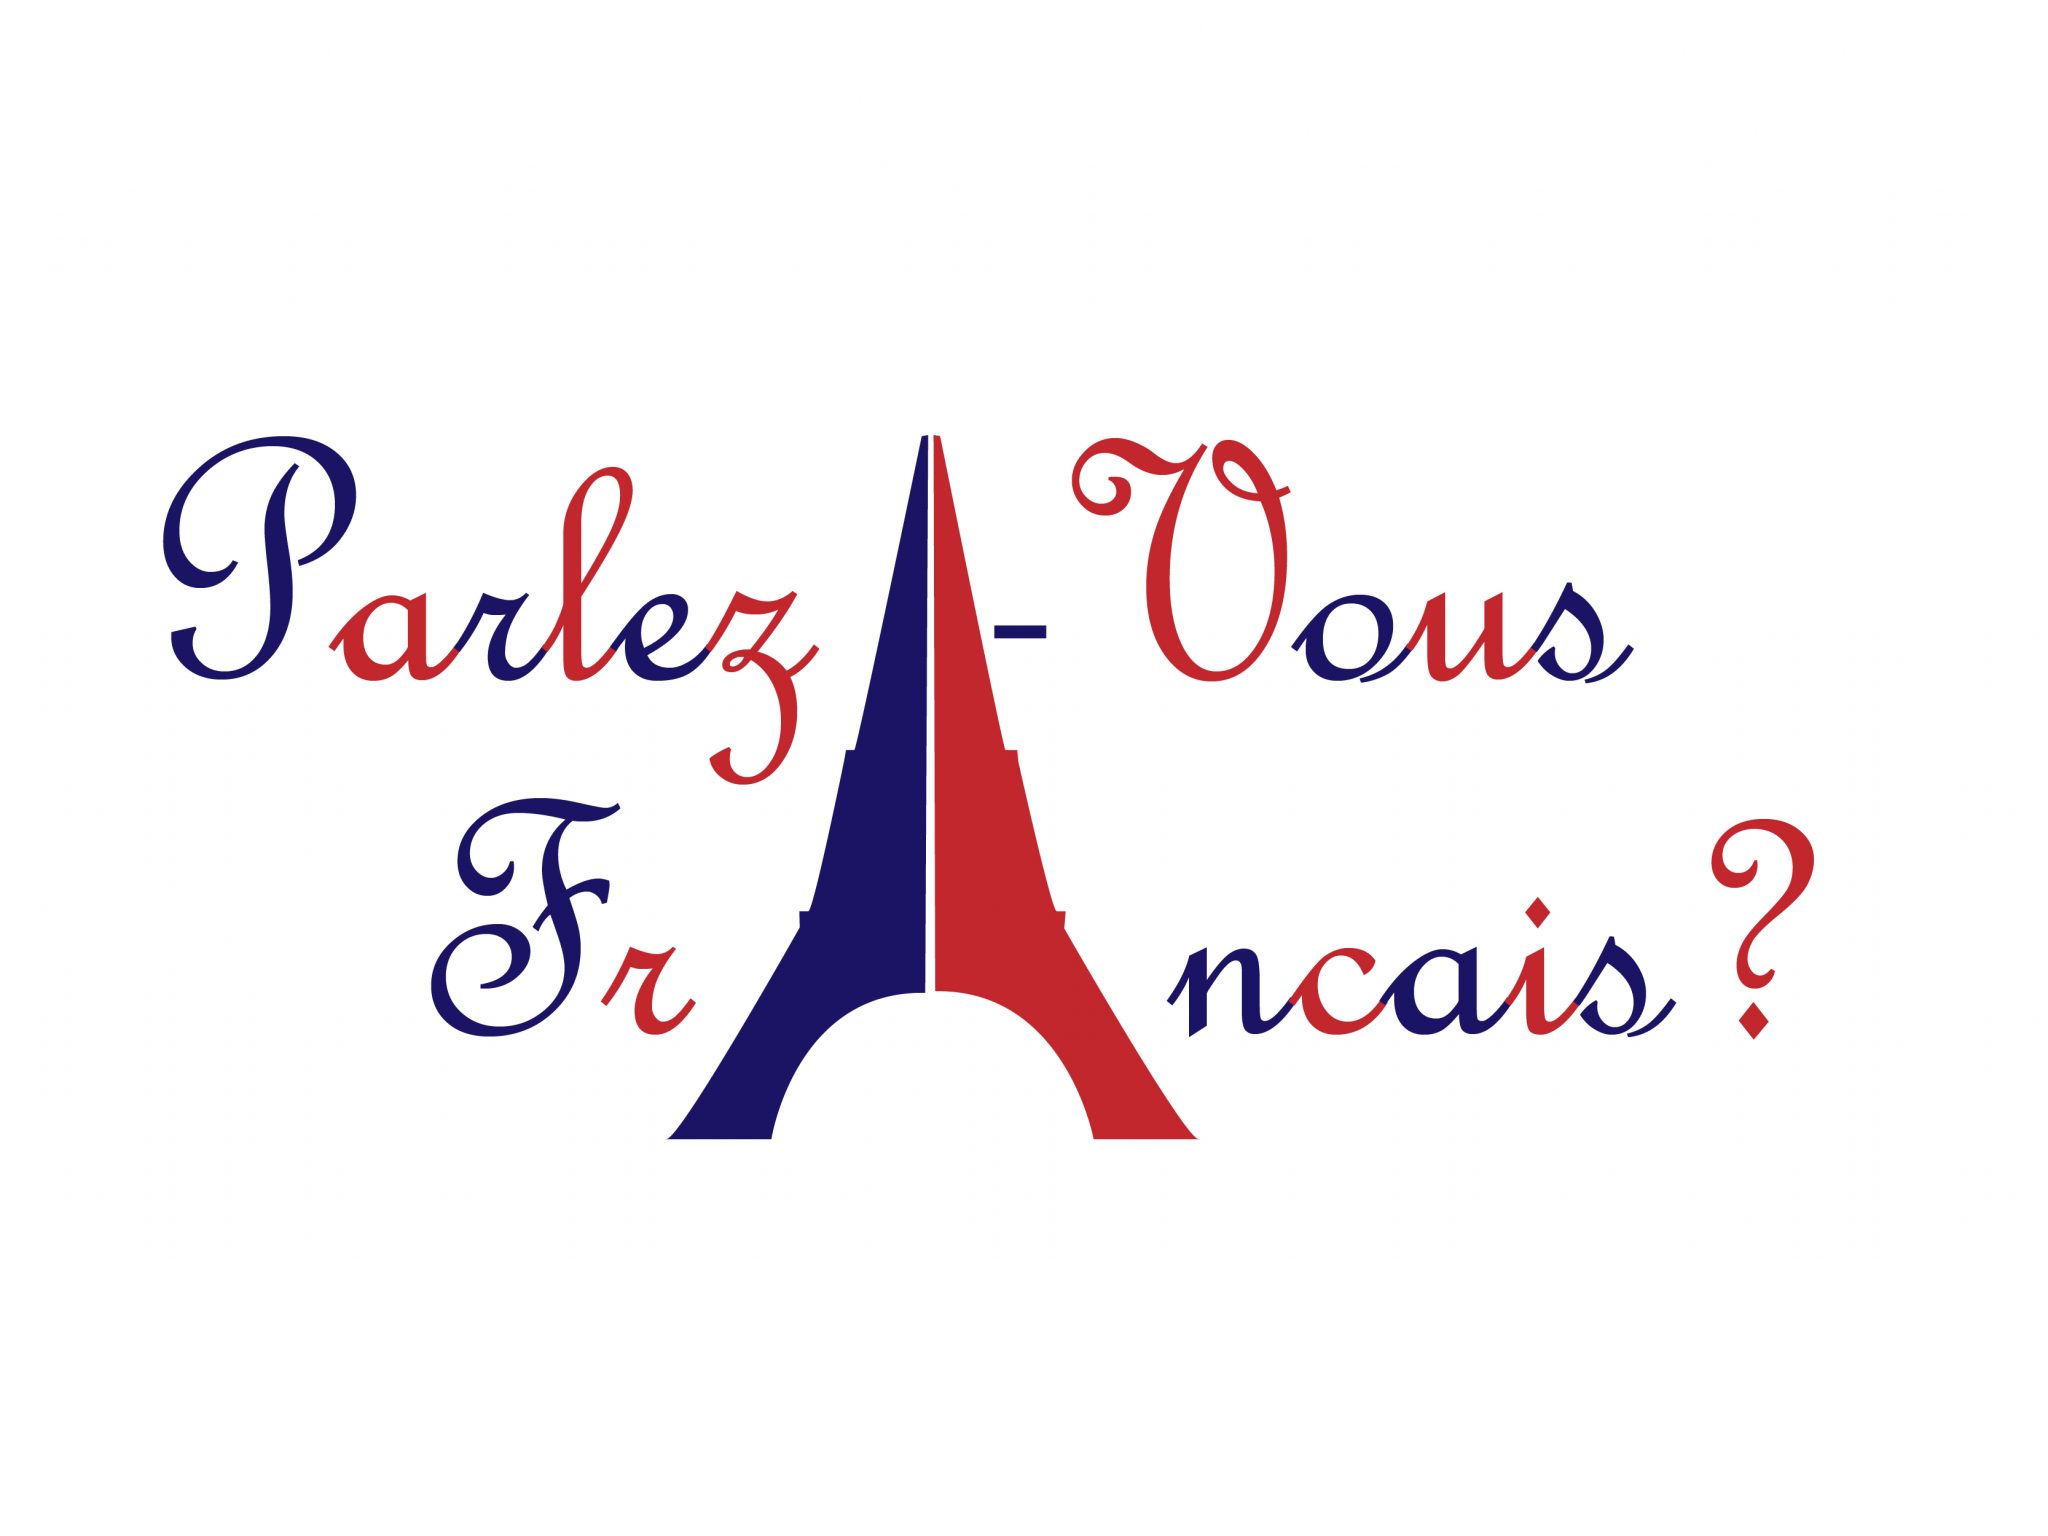 Imagem da Torre Eiffel com o texto "Parlez-Vous Français?", em referência ao curso de francês